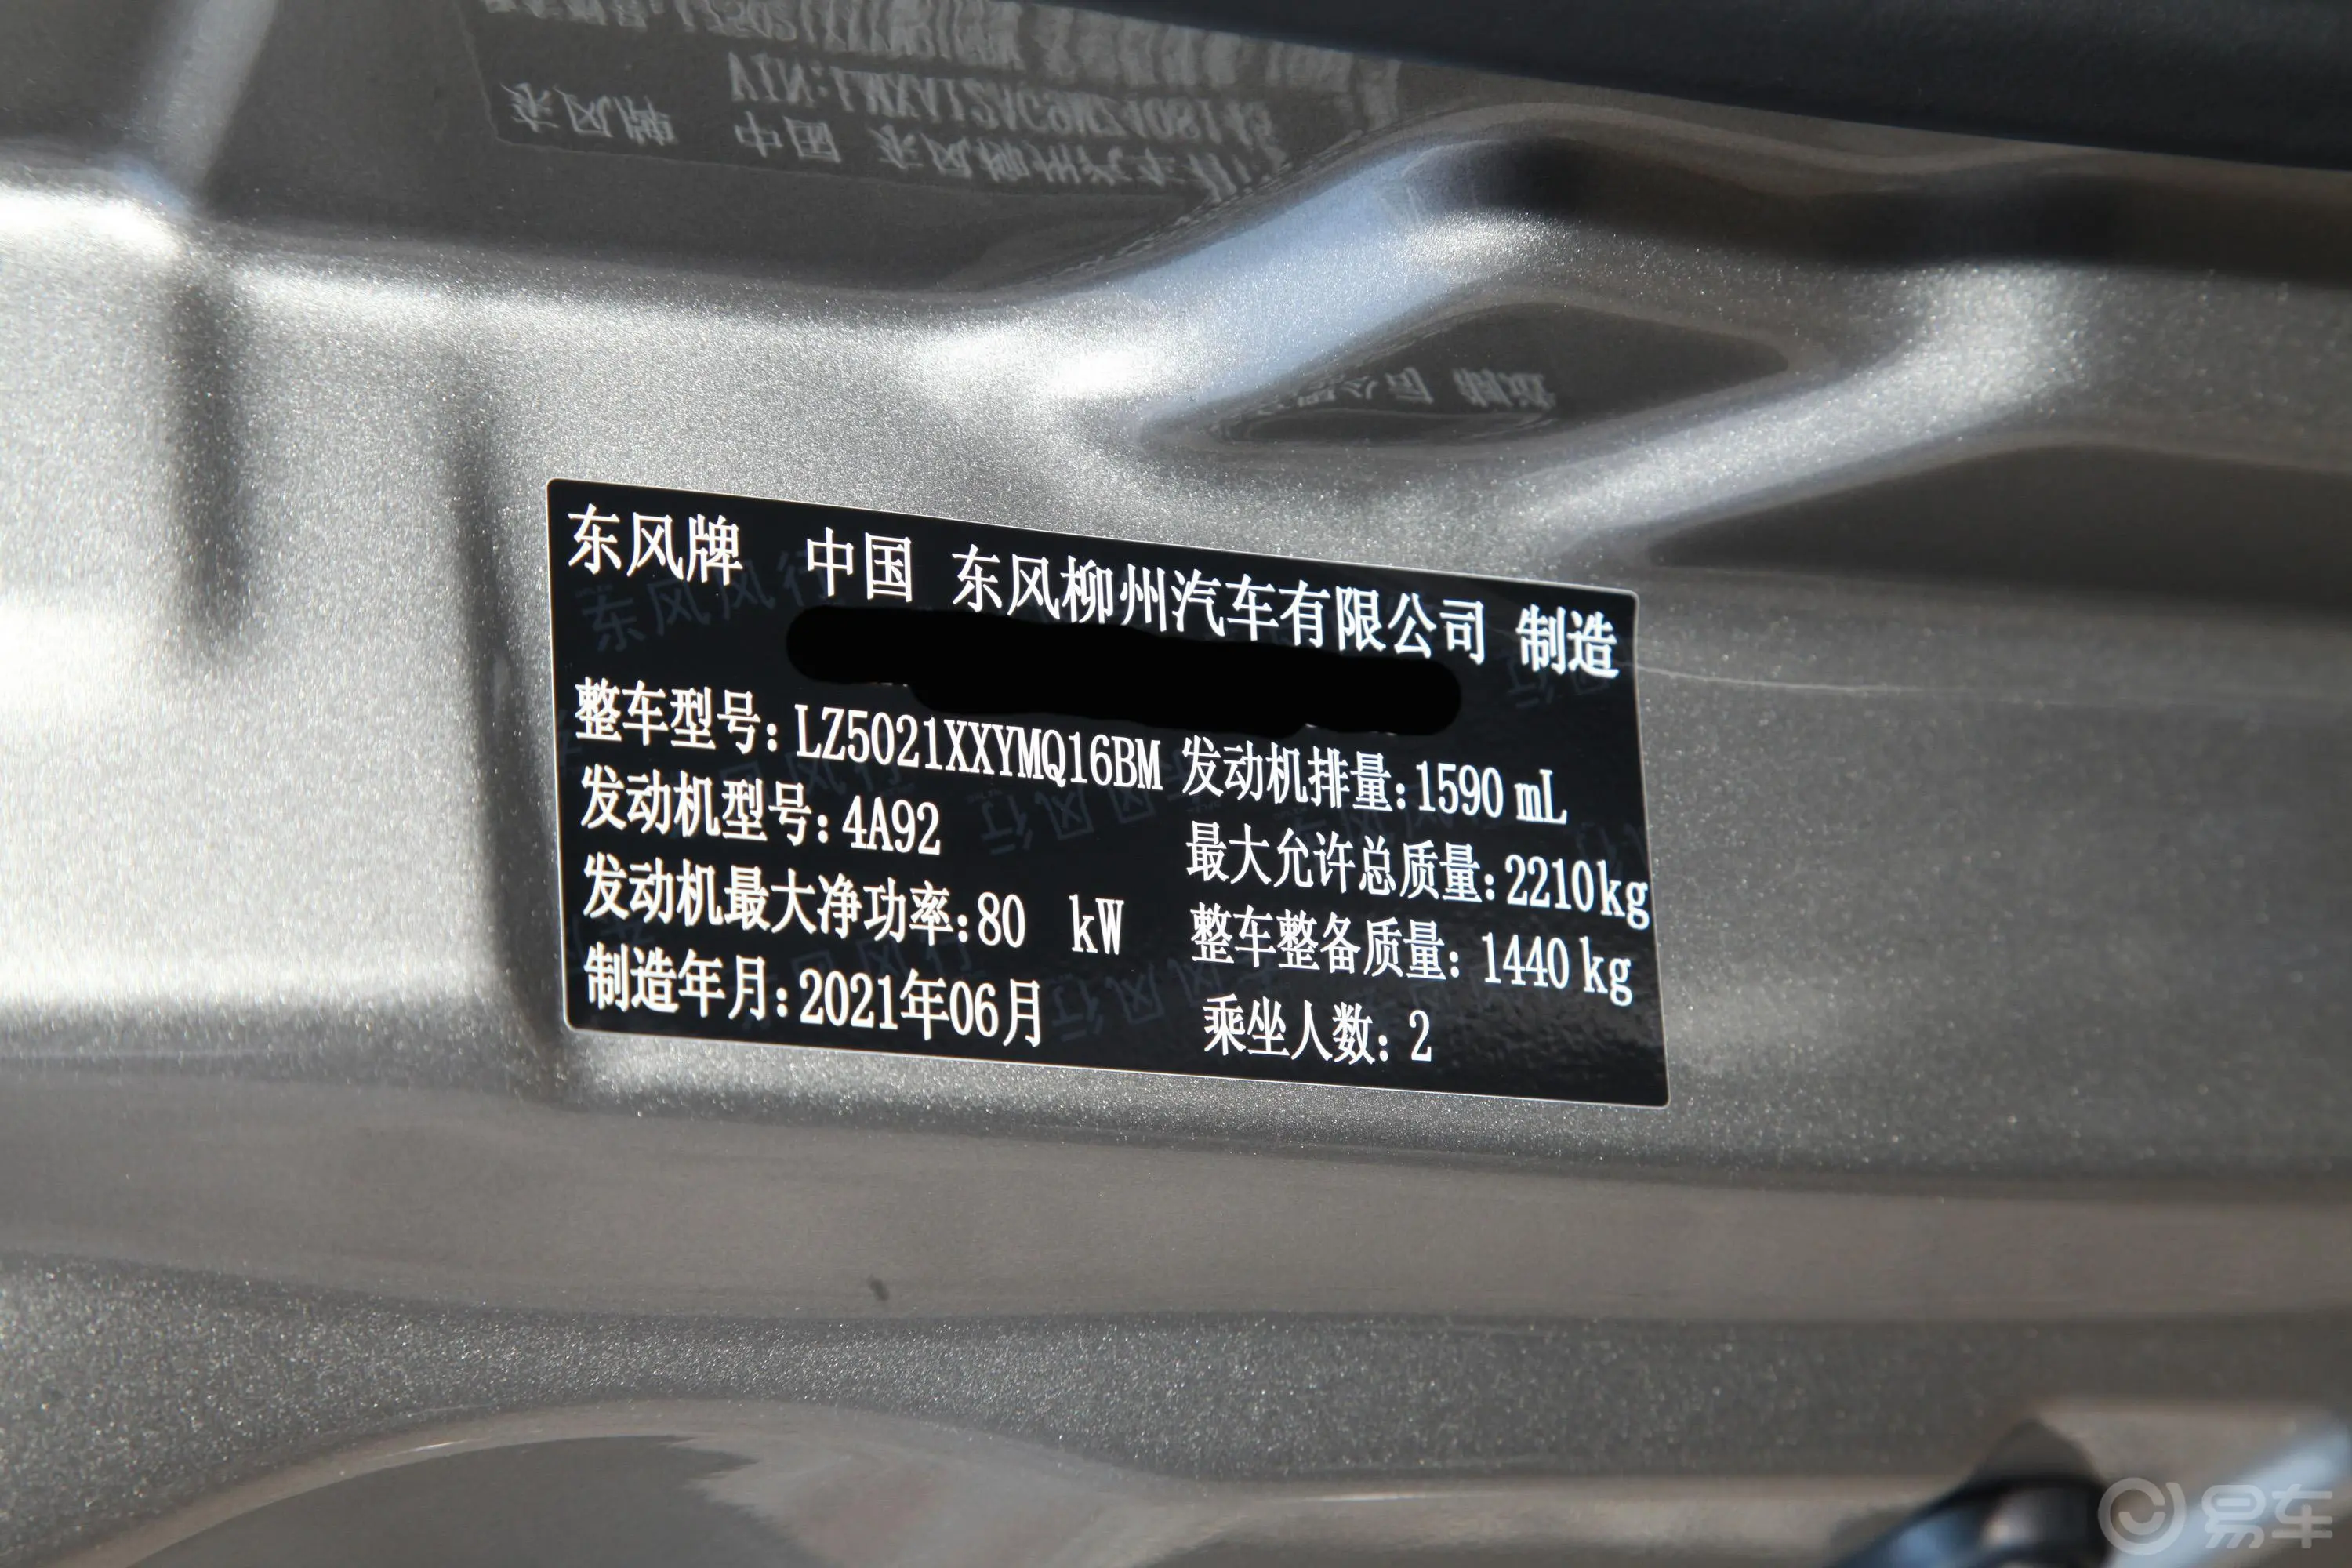 菱智V3 1.6L 封闭货车基本型 2座车辆信息铭牌